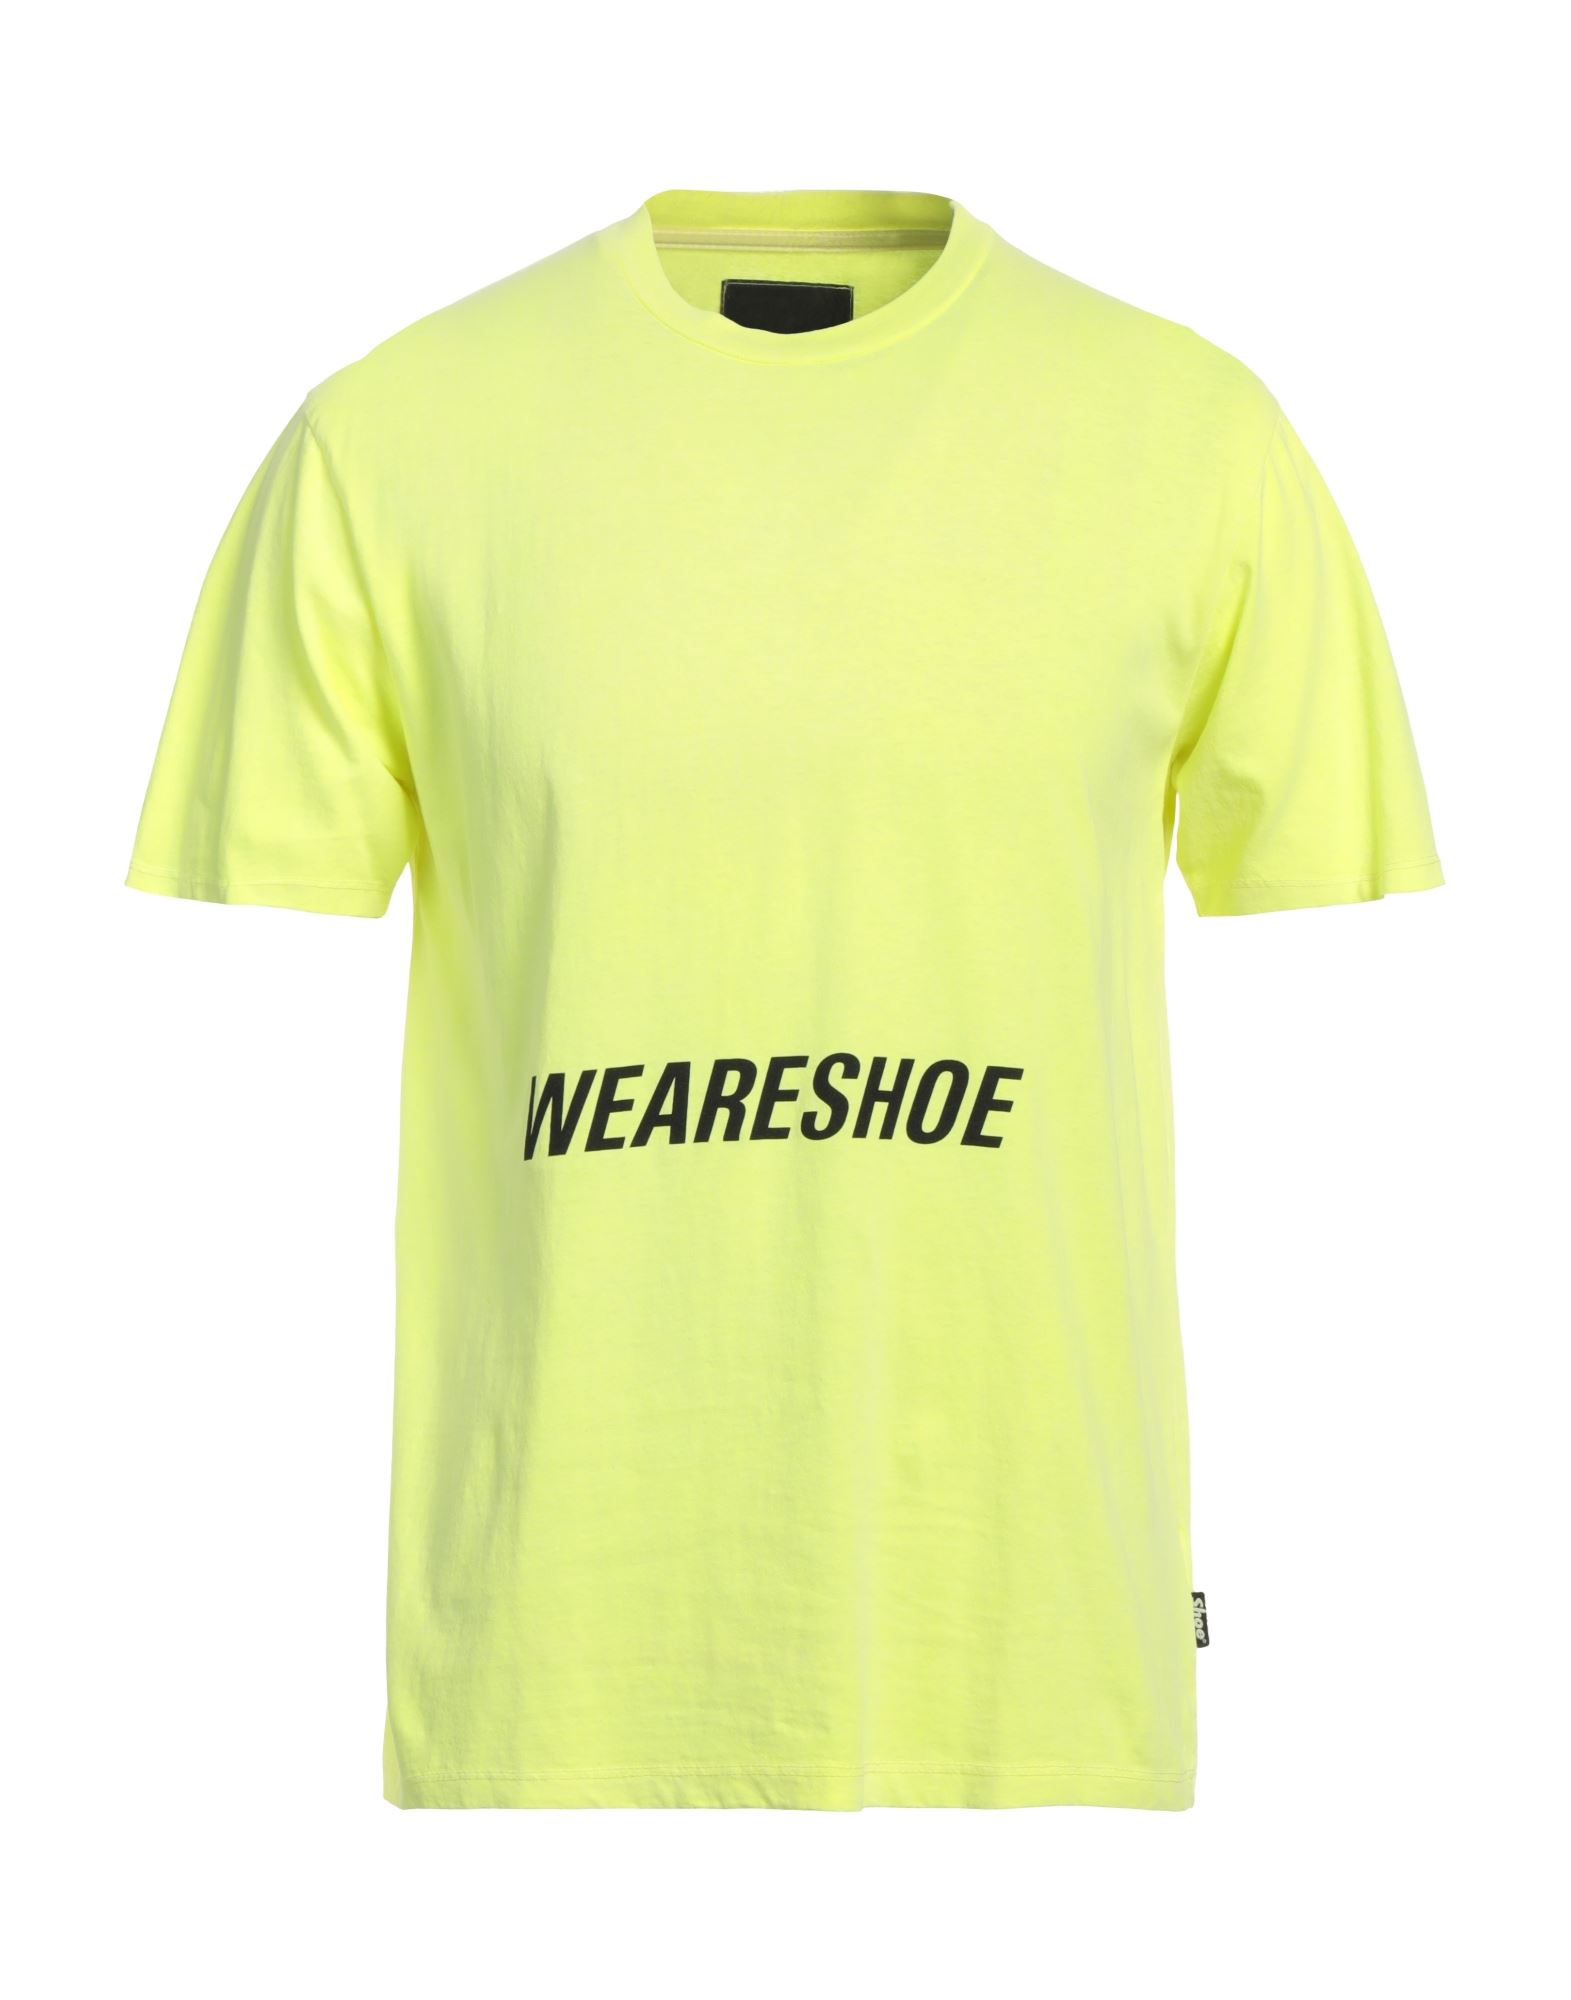 Shoe® Shoe Man T-shirt Yellow Size Xl Cotton